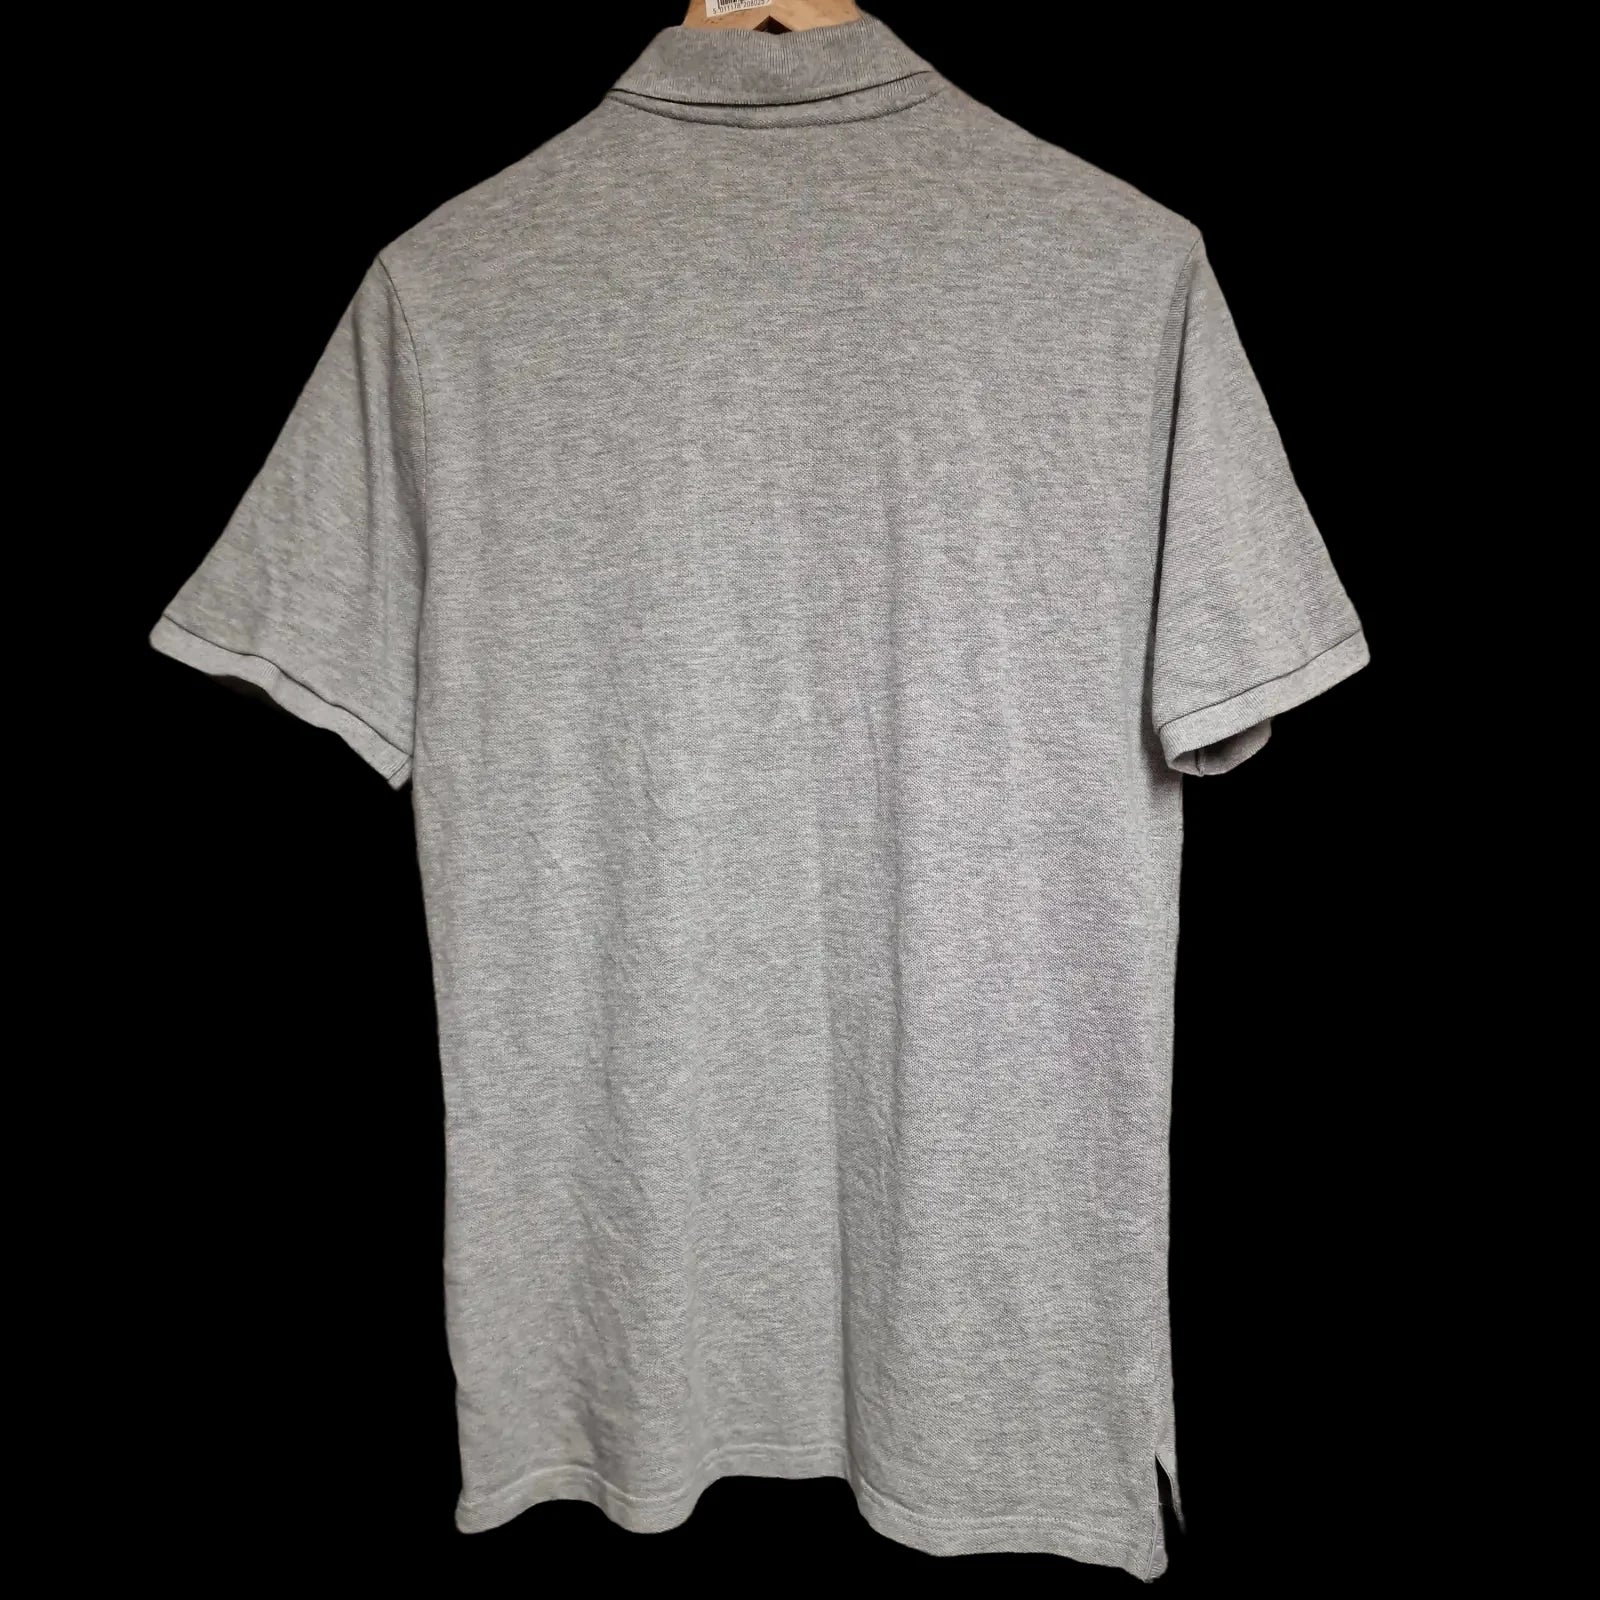 Mens Nike Grey Polo Shirt Uk Small - Shirts - 2 - 770